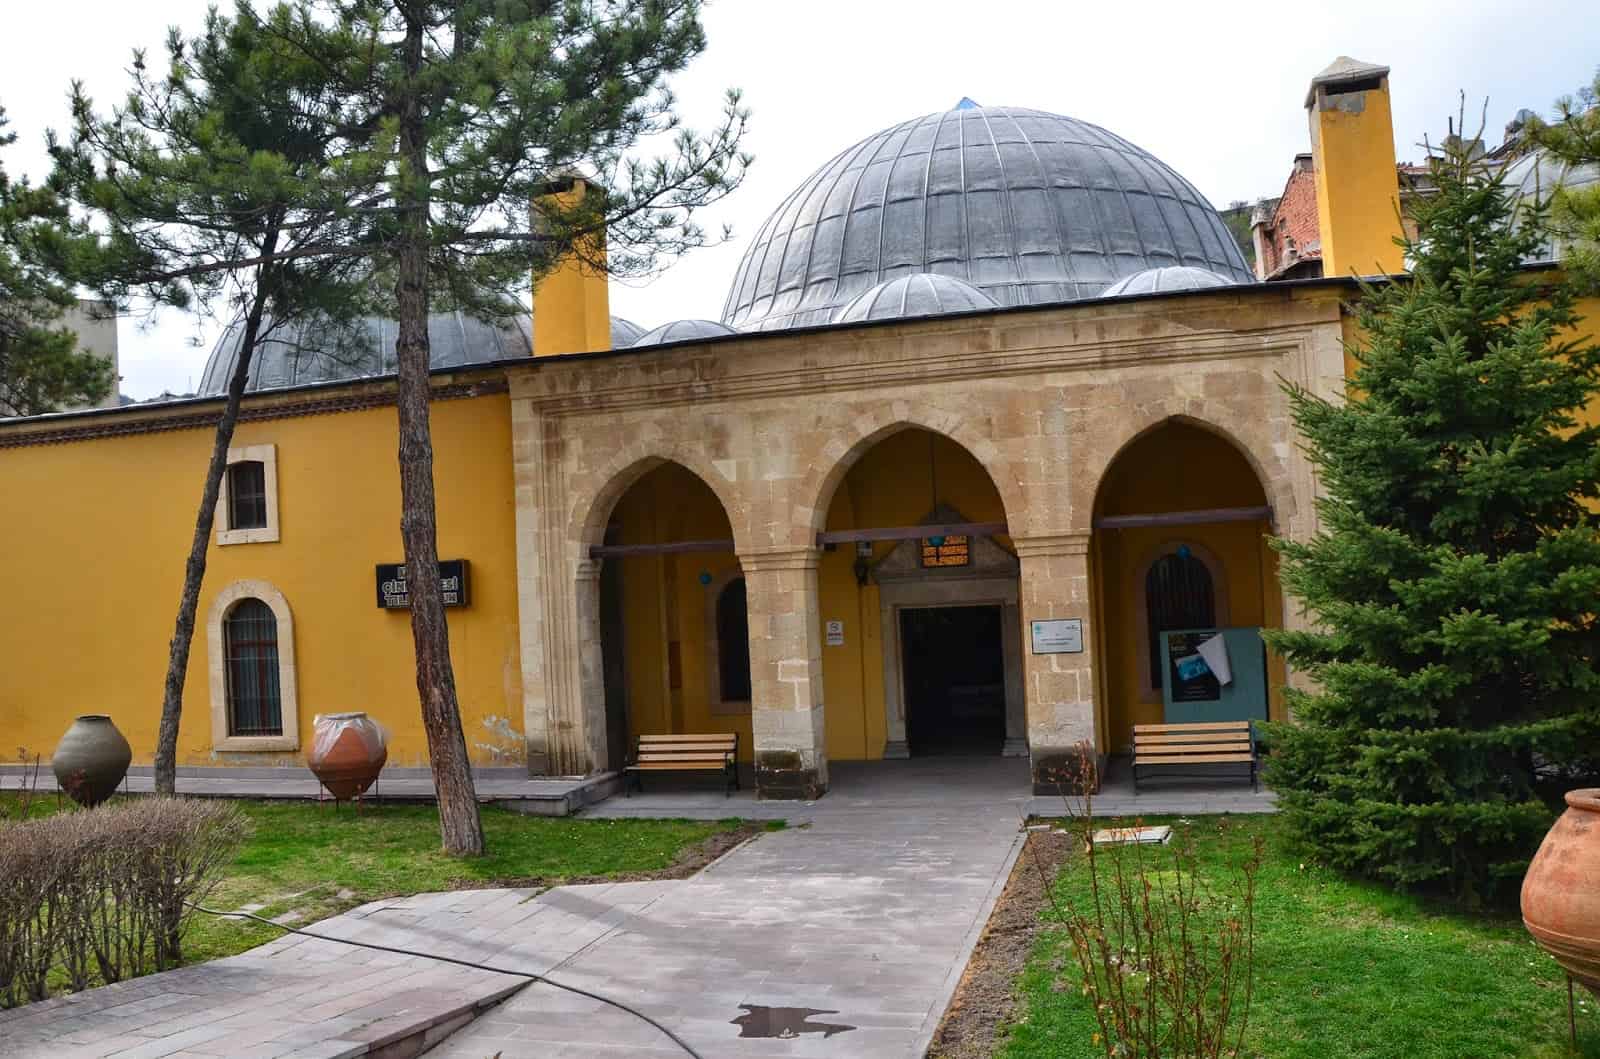 Tile Museum in Kütahya, Turkey